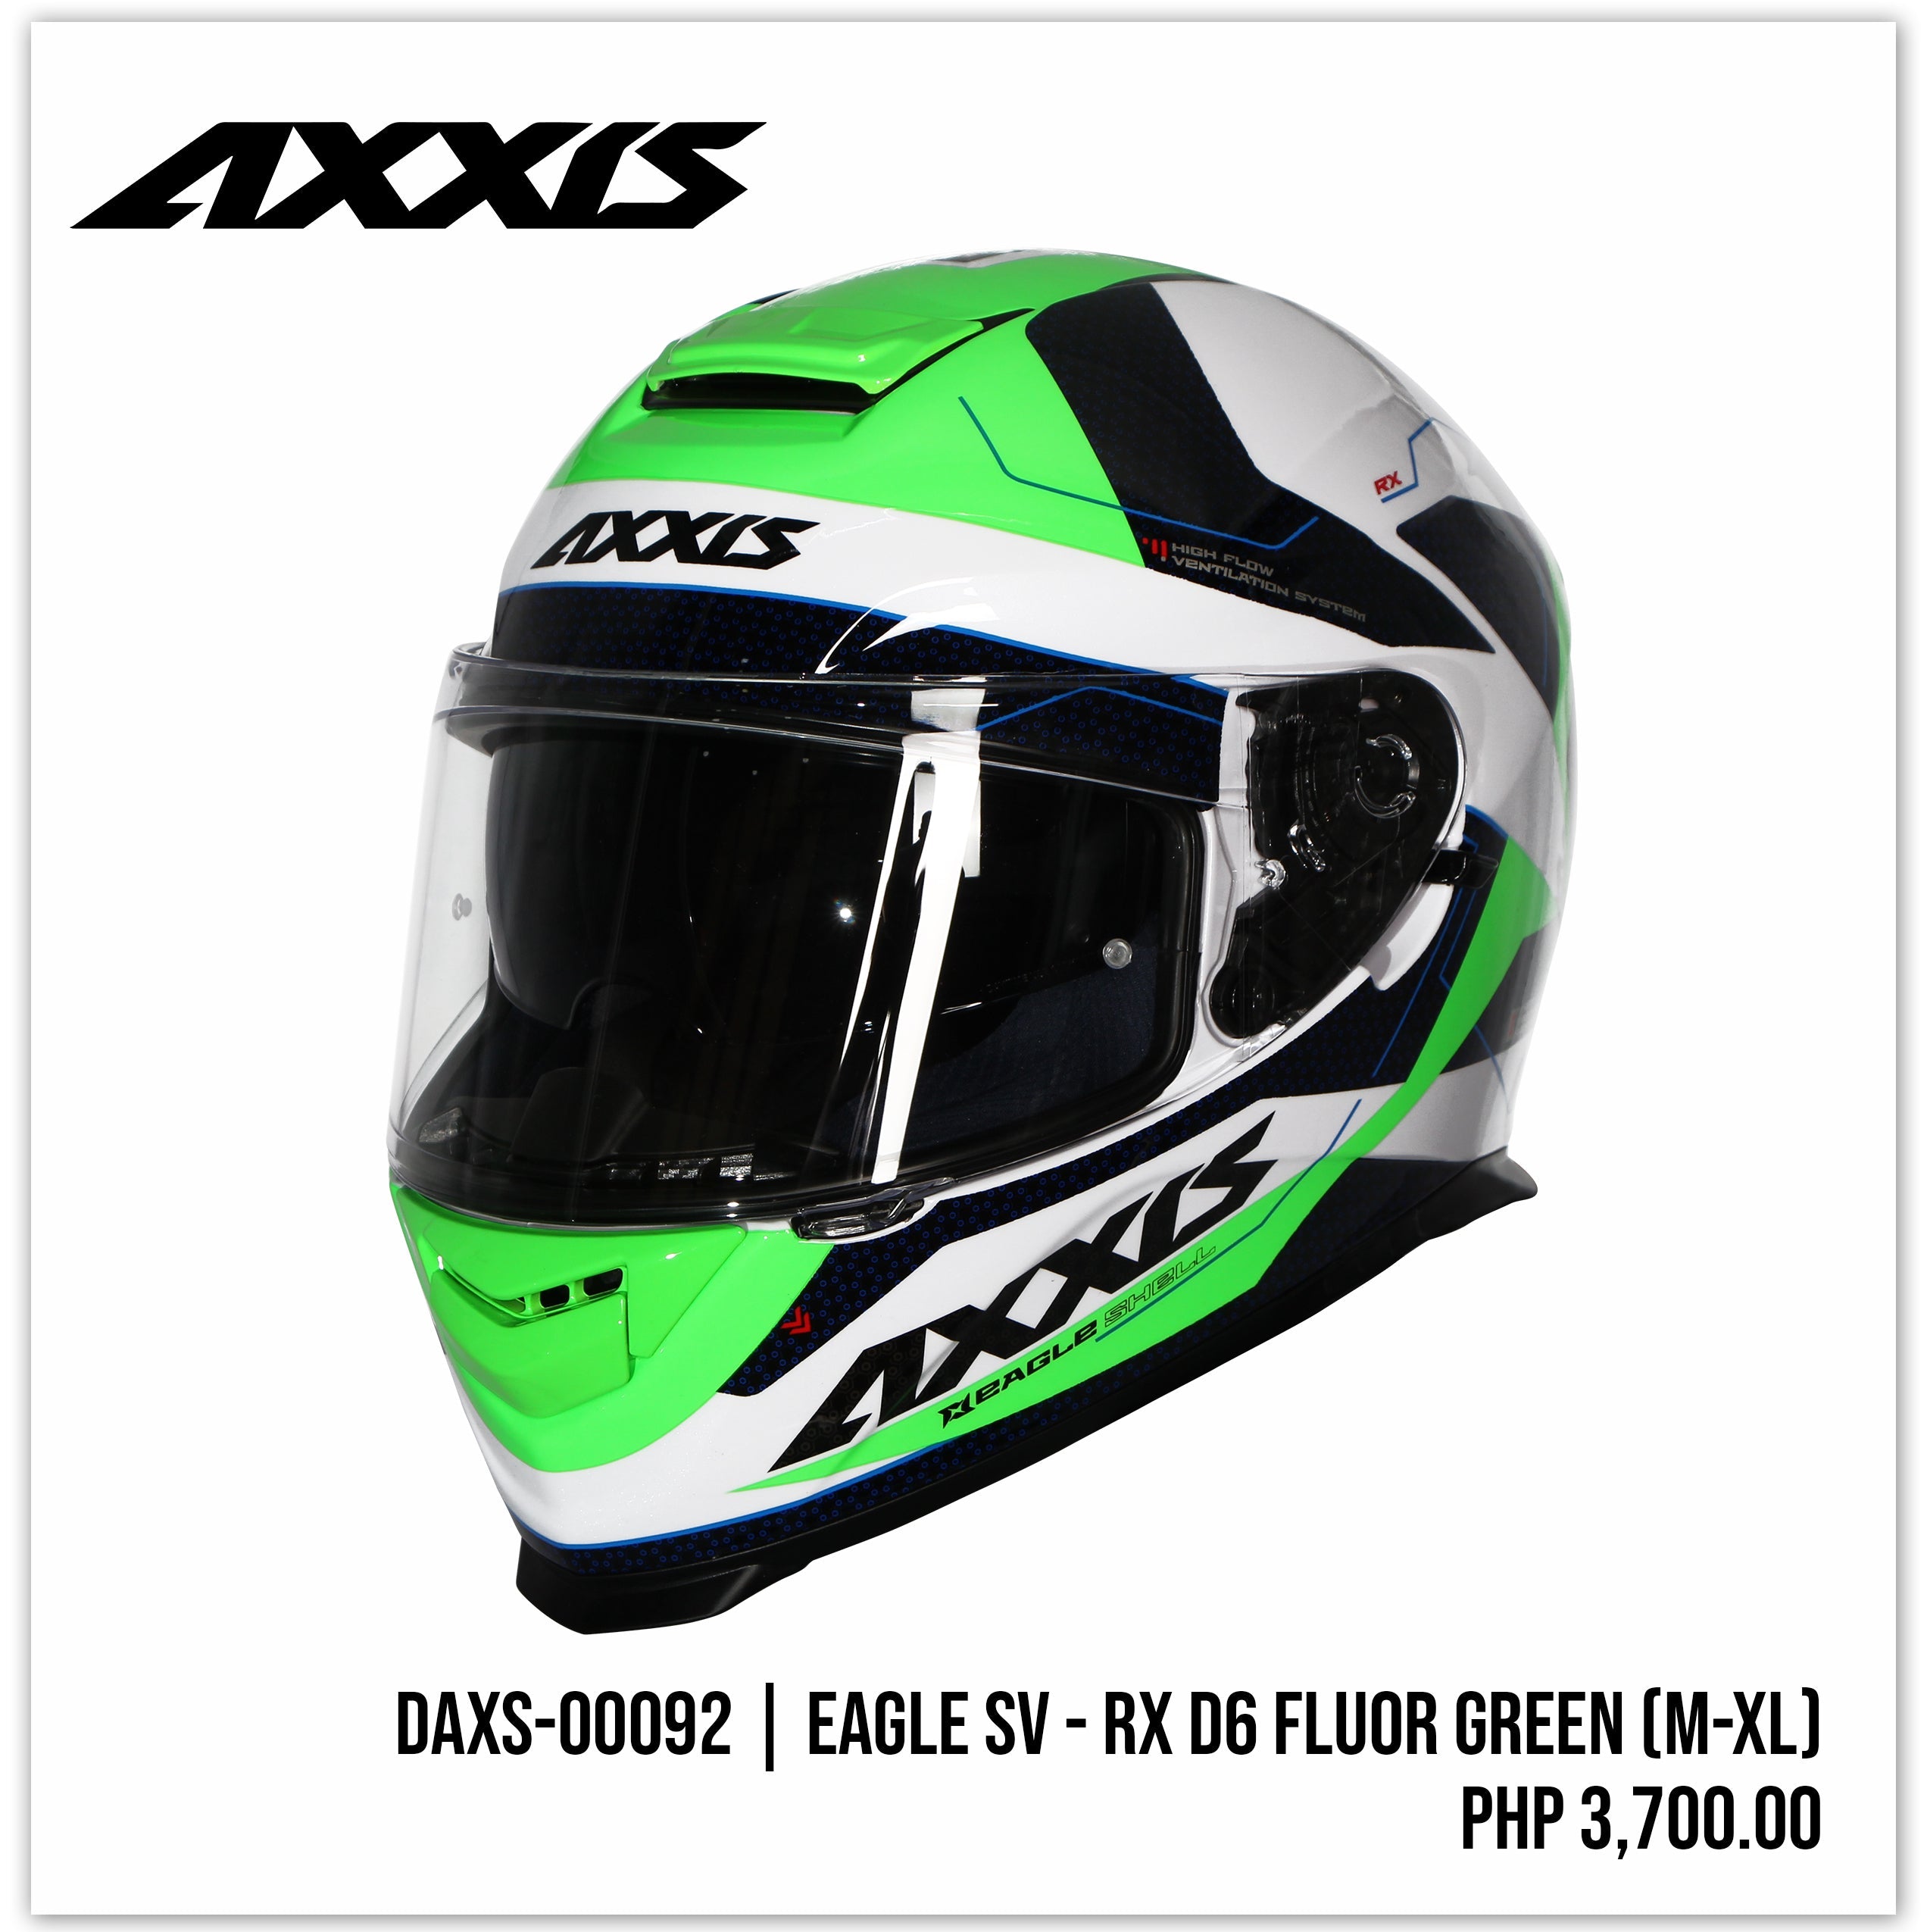 Eagle SV - RX D6 Gloss Fluor Green